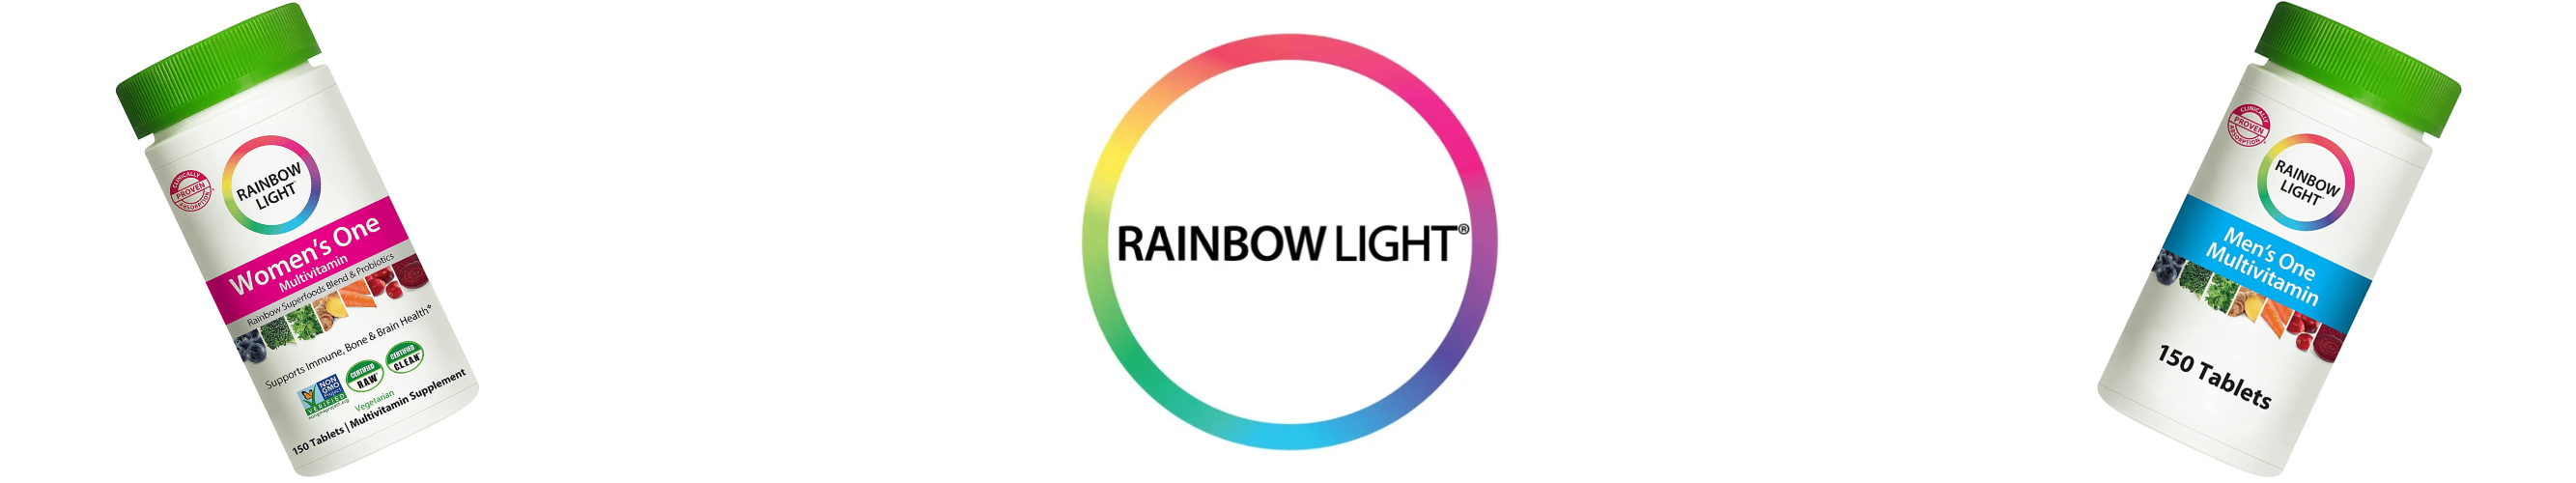 HiLife Vitamins | Rainbow Light